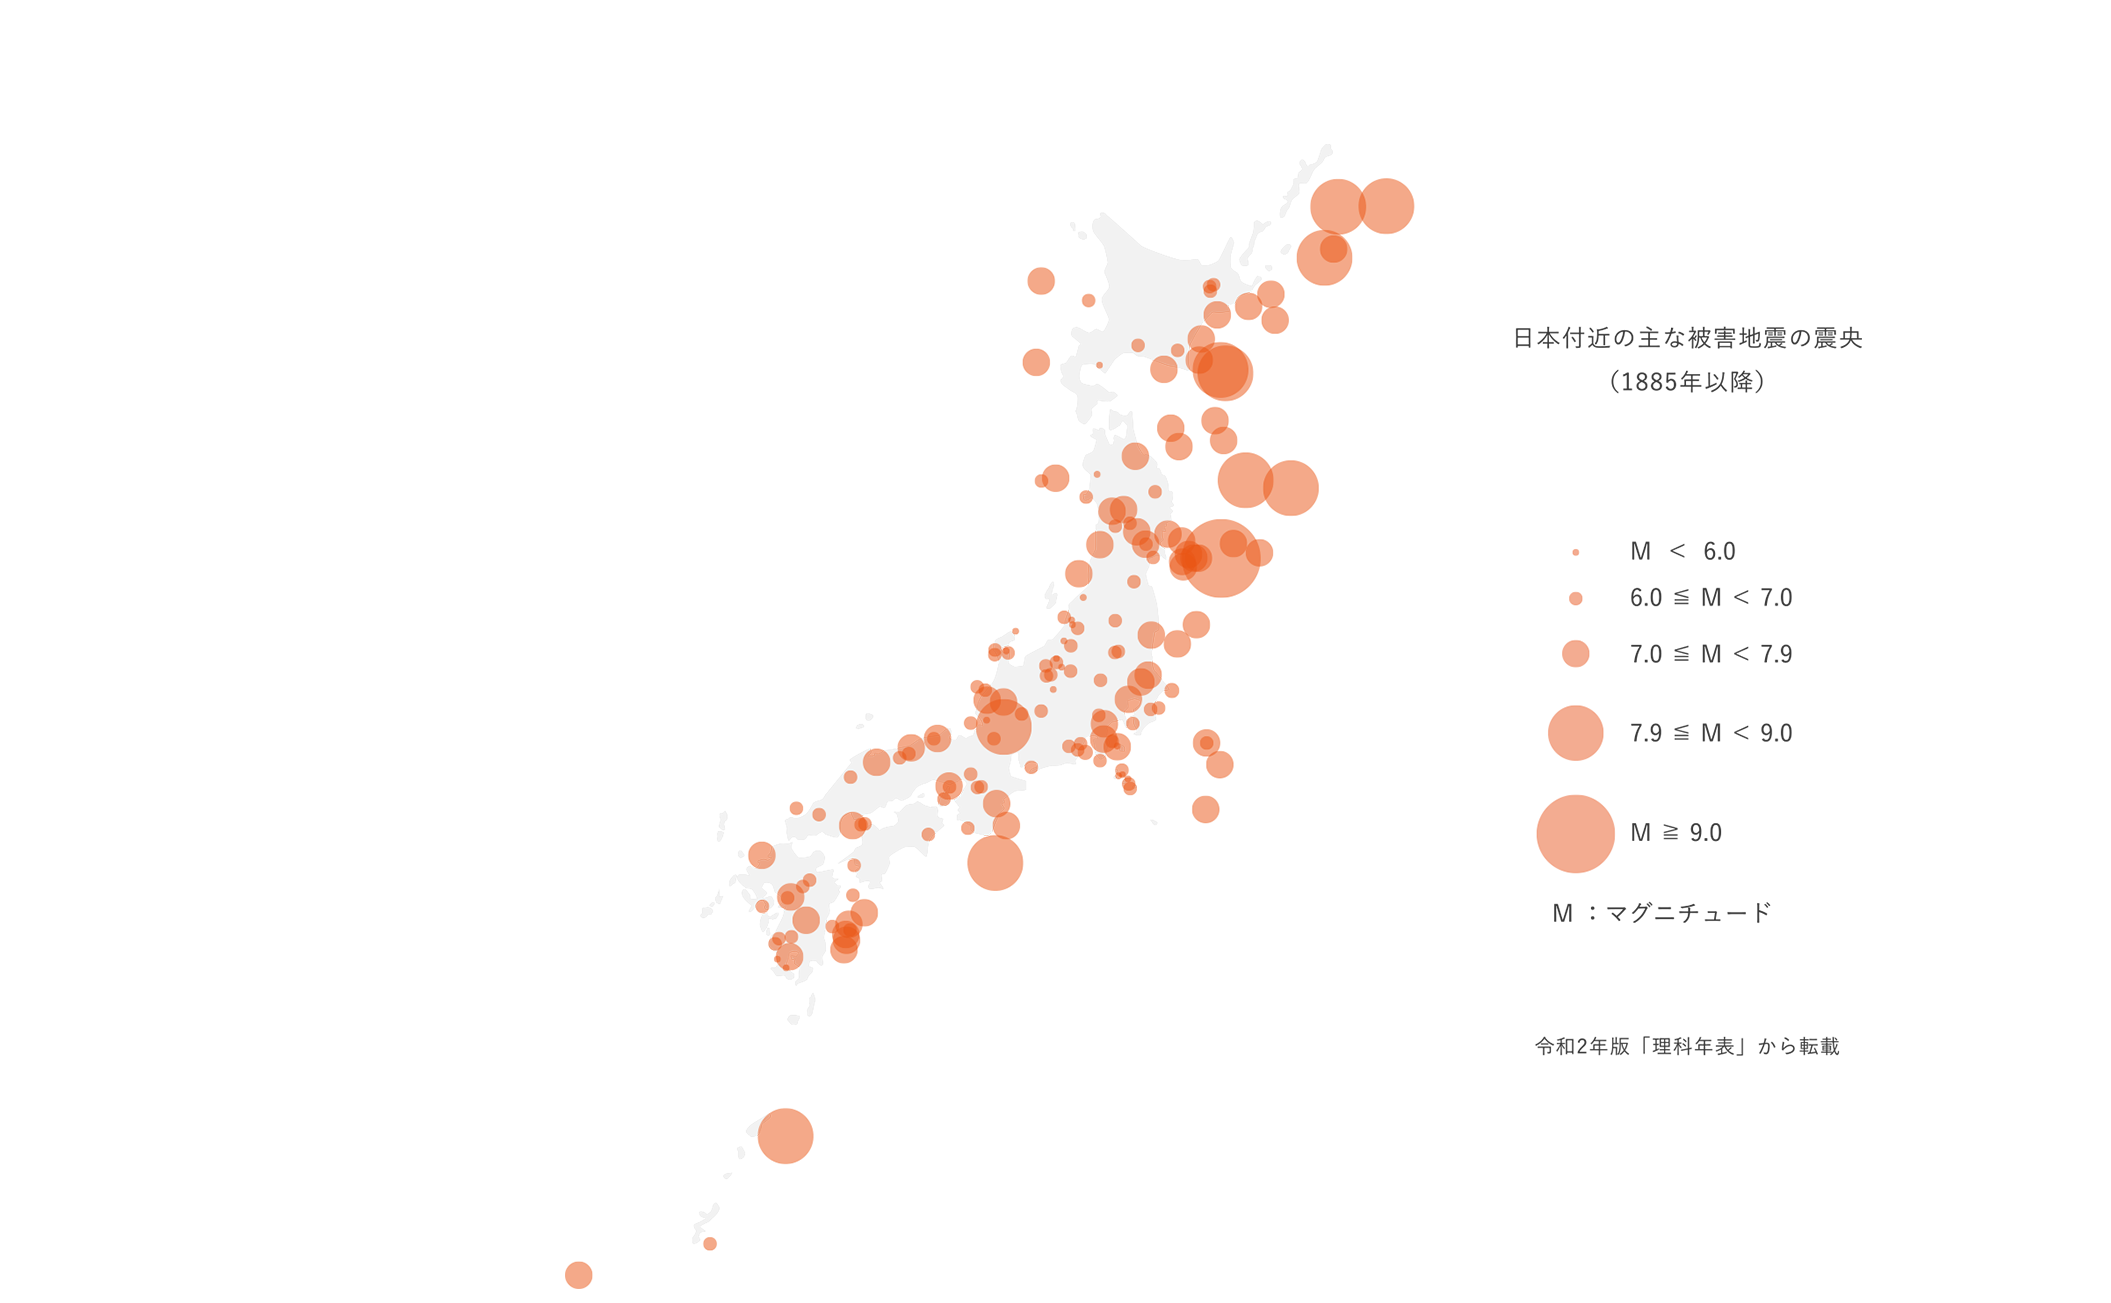 日本付近の主な被害地震の震央（1885年以降）